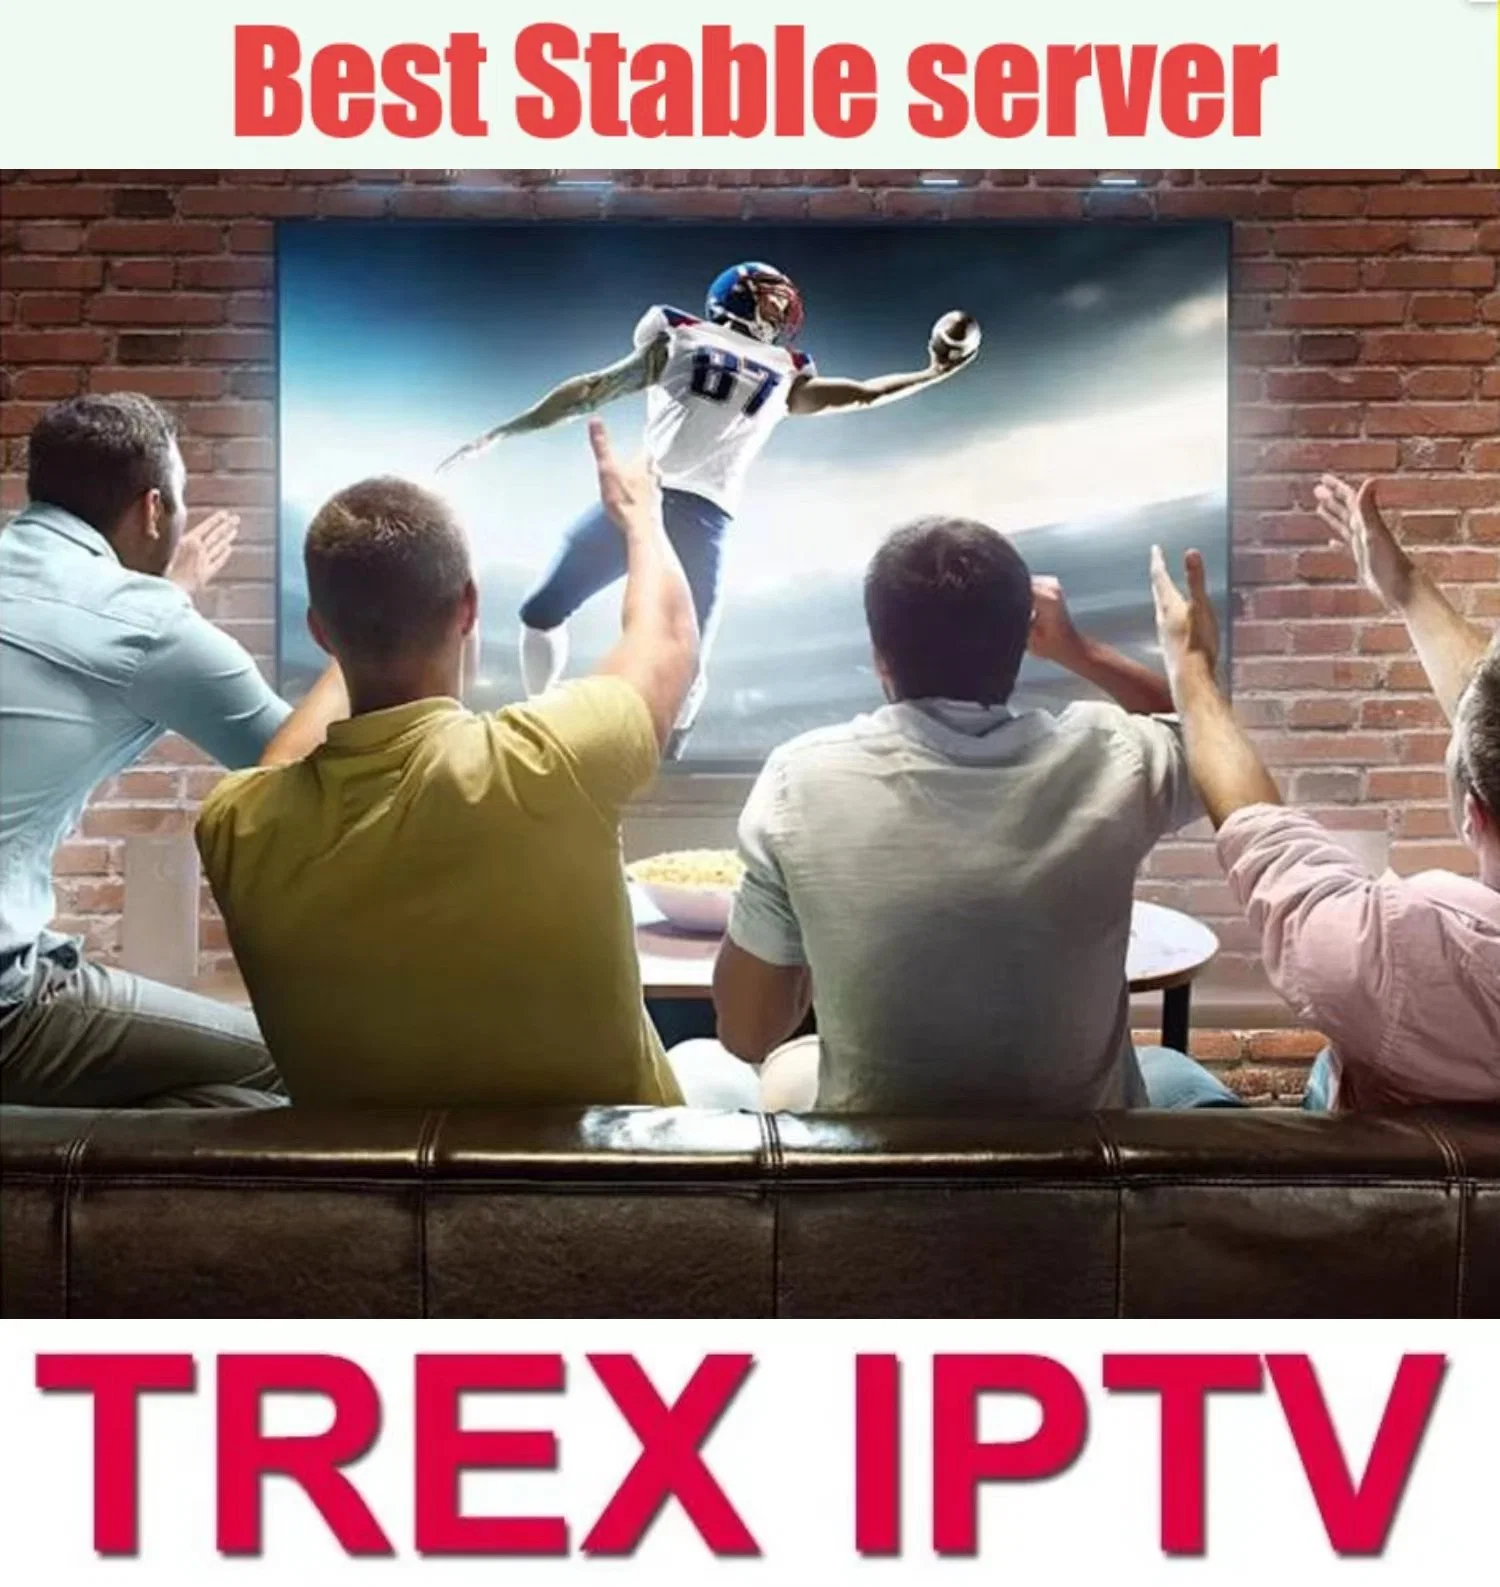 IPTV Vente à chaud en Suisse IPTV Suisse M3U Espagne Europe Allemagne téléviseur à écran plat IPTV meilleur monde de test gratuit IPTV Smart Android Market World IPTV stable